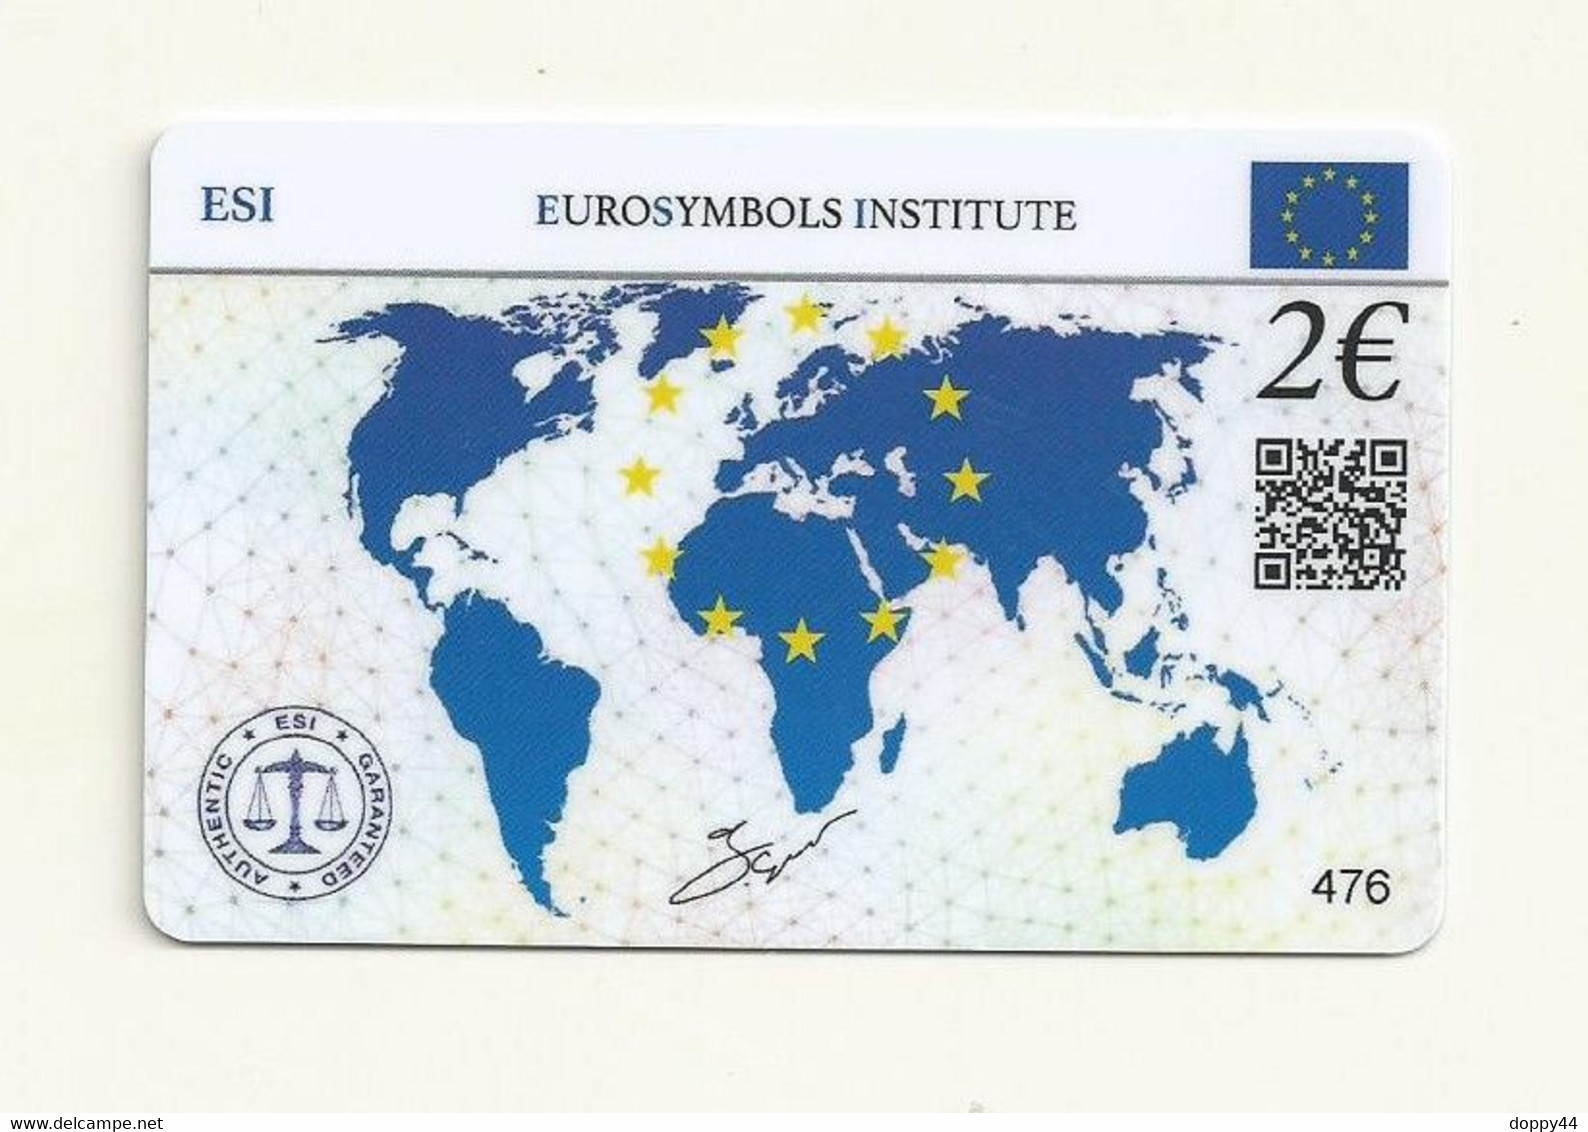 CARTE DE COLLECTION SANS PIECE BELGIQUE EUROSYMBOLS INSTITUTE ESI ID CARD MILLESIME 2005. - Belgium